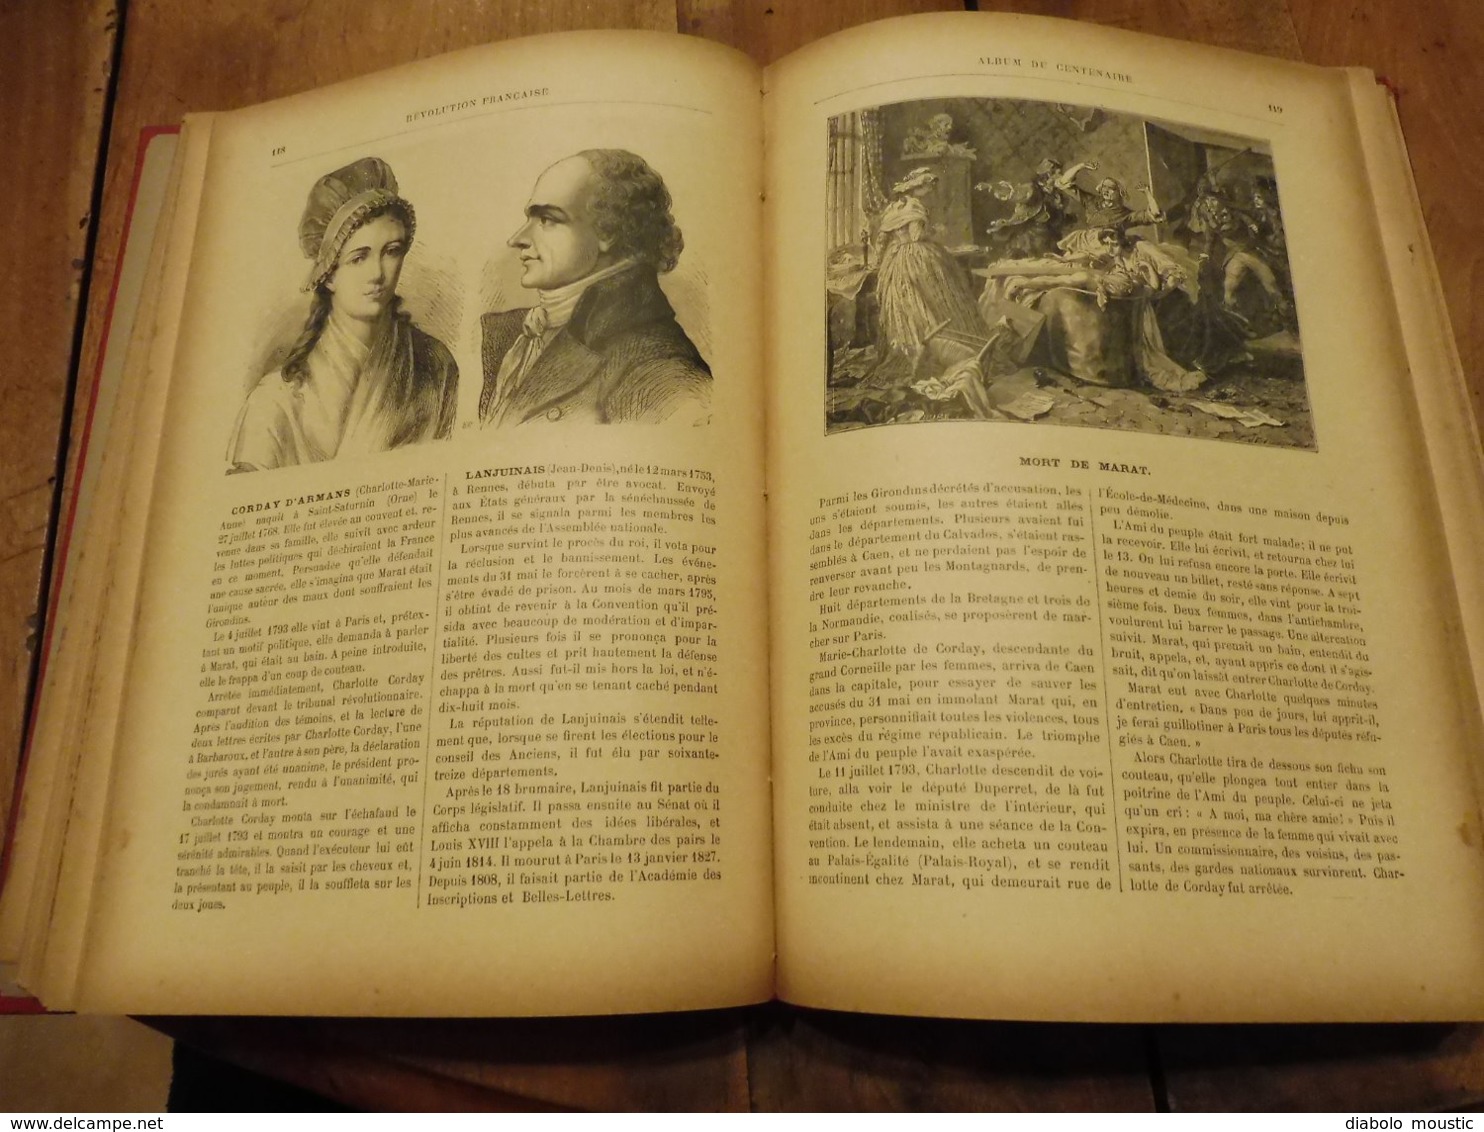 1892  RÉVOLUTION FRANÇAISE (Album du Centenaire): Les Grands Hommes et les Grands Faits - 436 gravures sur bois,